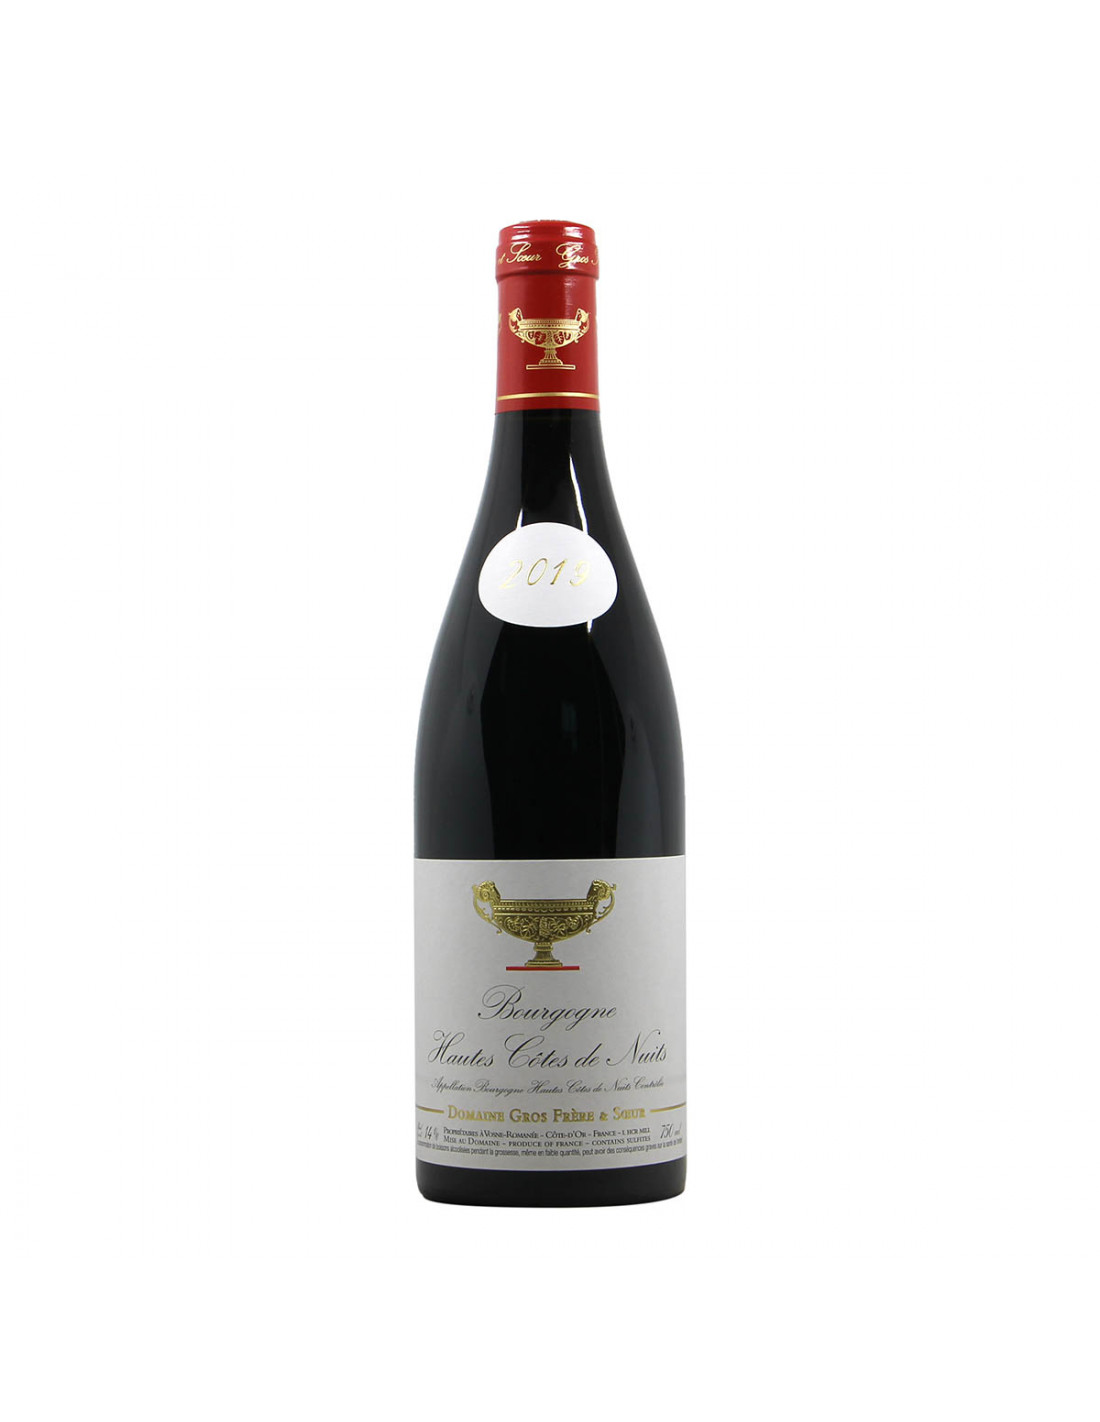 Domaine Gros Frere et Soeur Bourgogne  Hautes cotes de Nuits 2019 Grandi Bottiglie